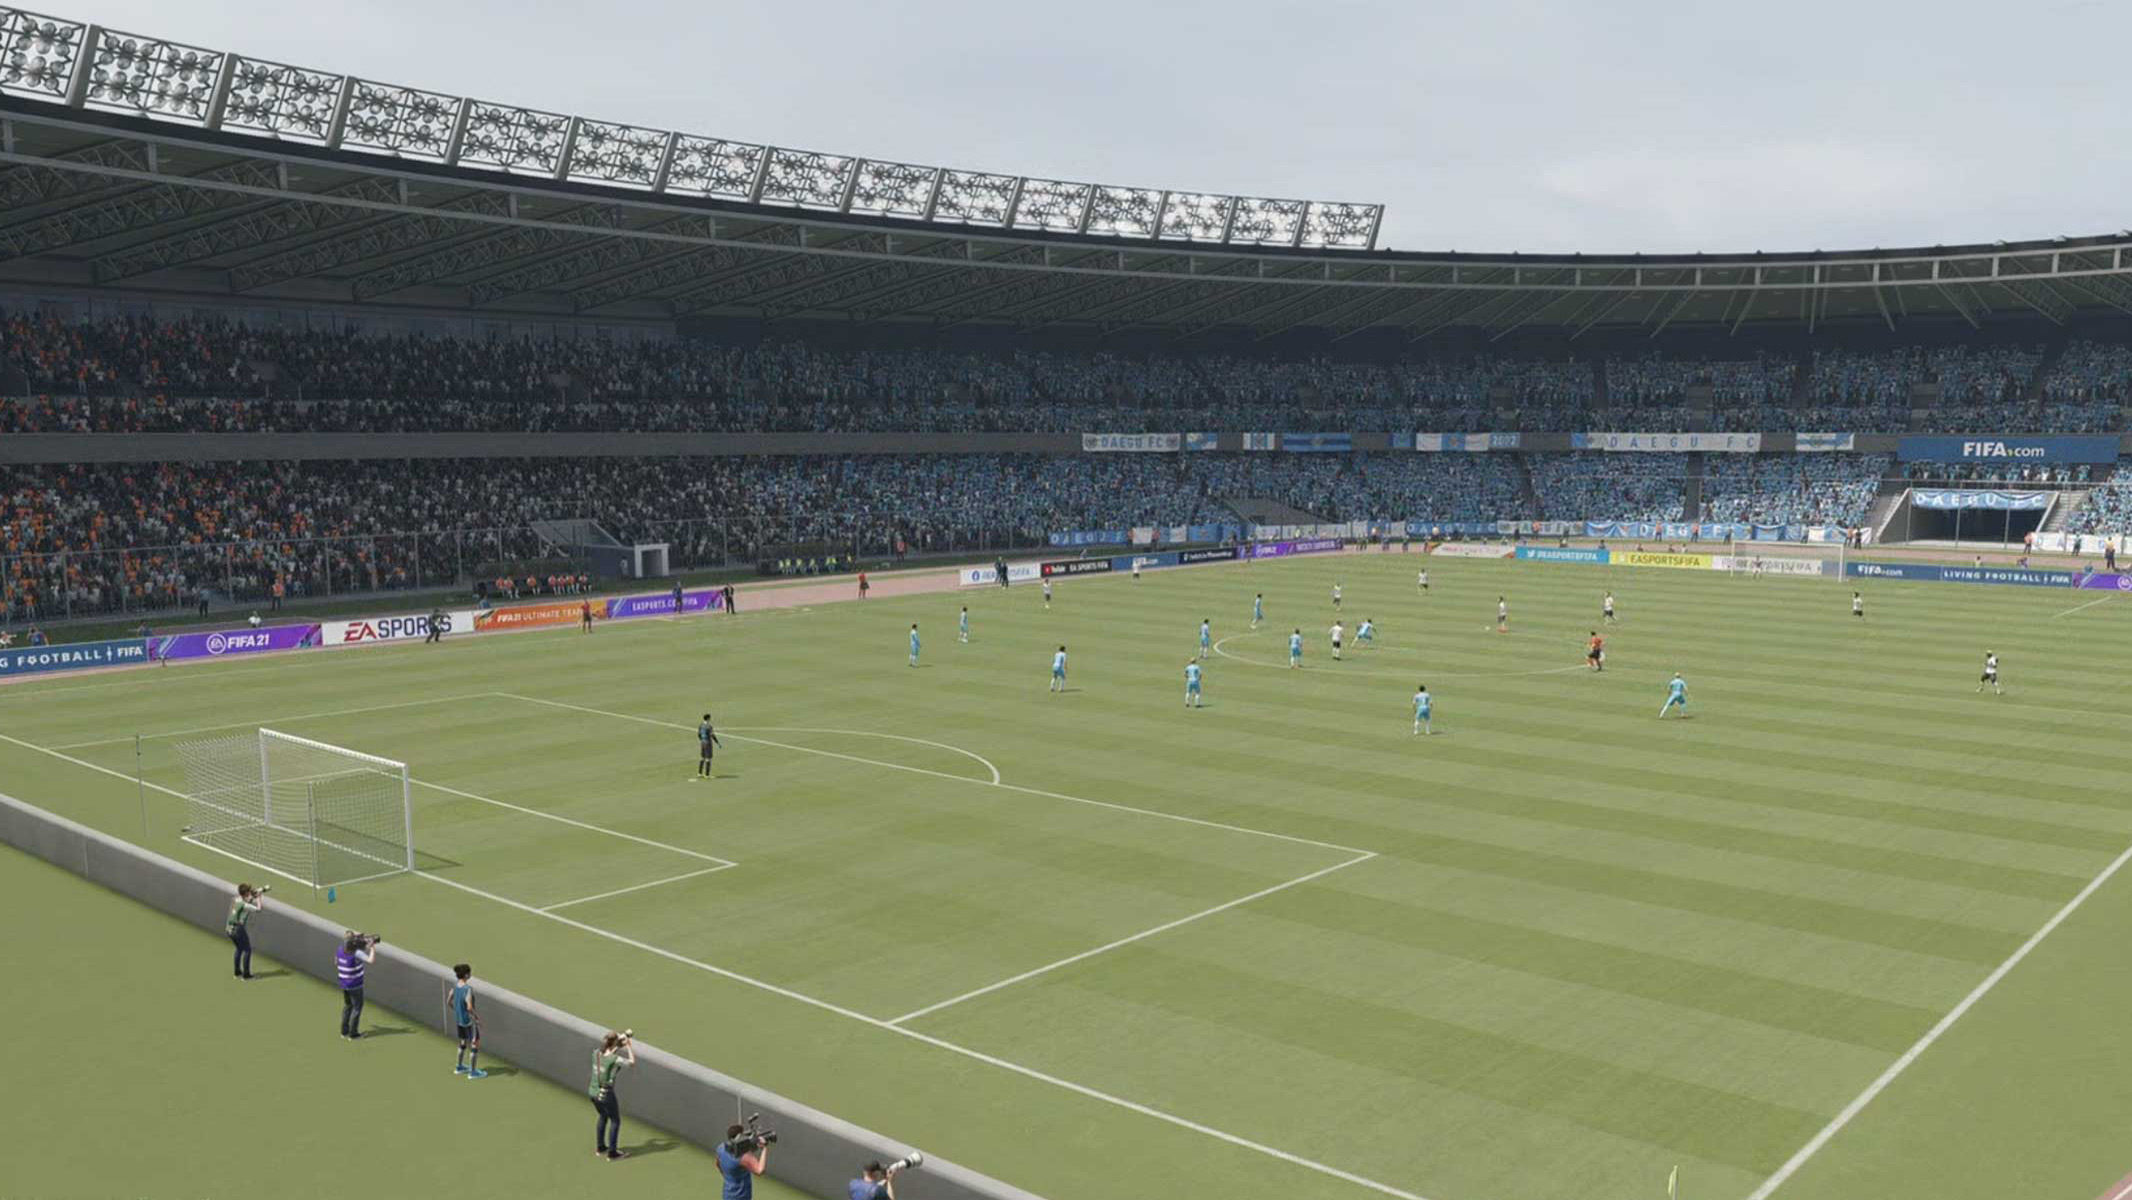 FIFA 21: confira todos os clubes, ligas e estádios